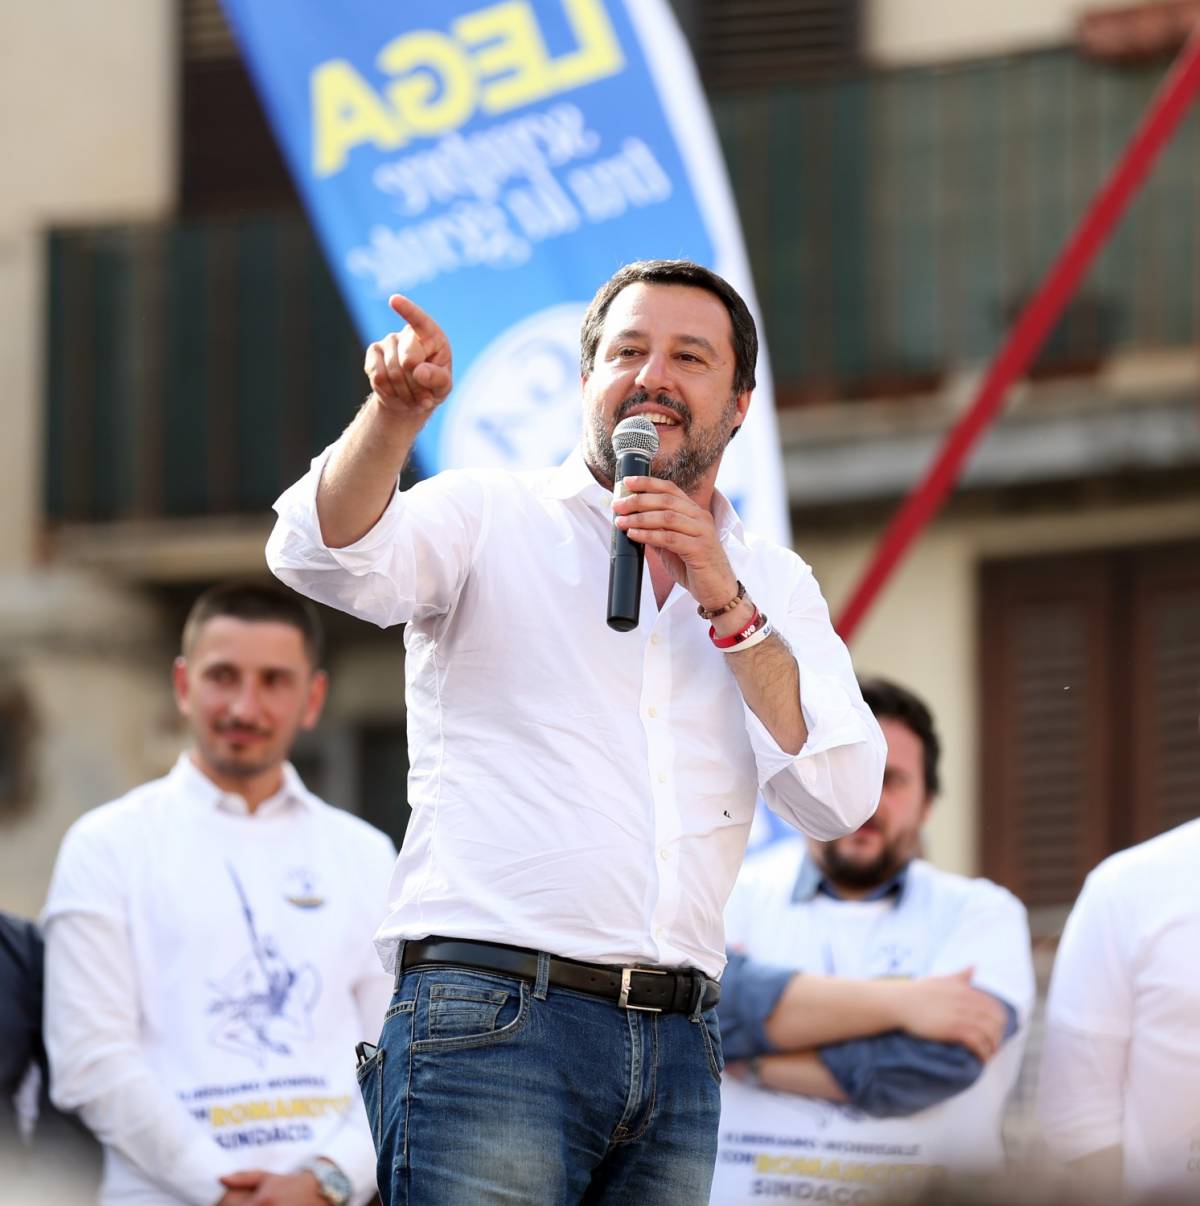 Casapound, Salvini sulla violenza: "Castrazione chimica"